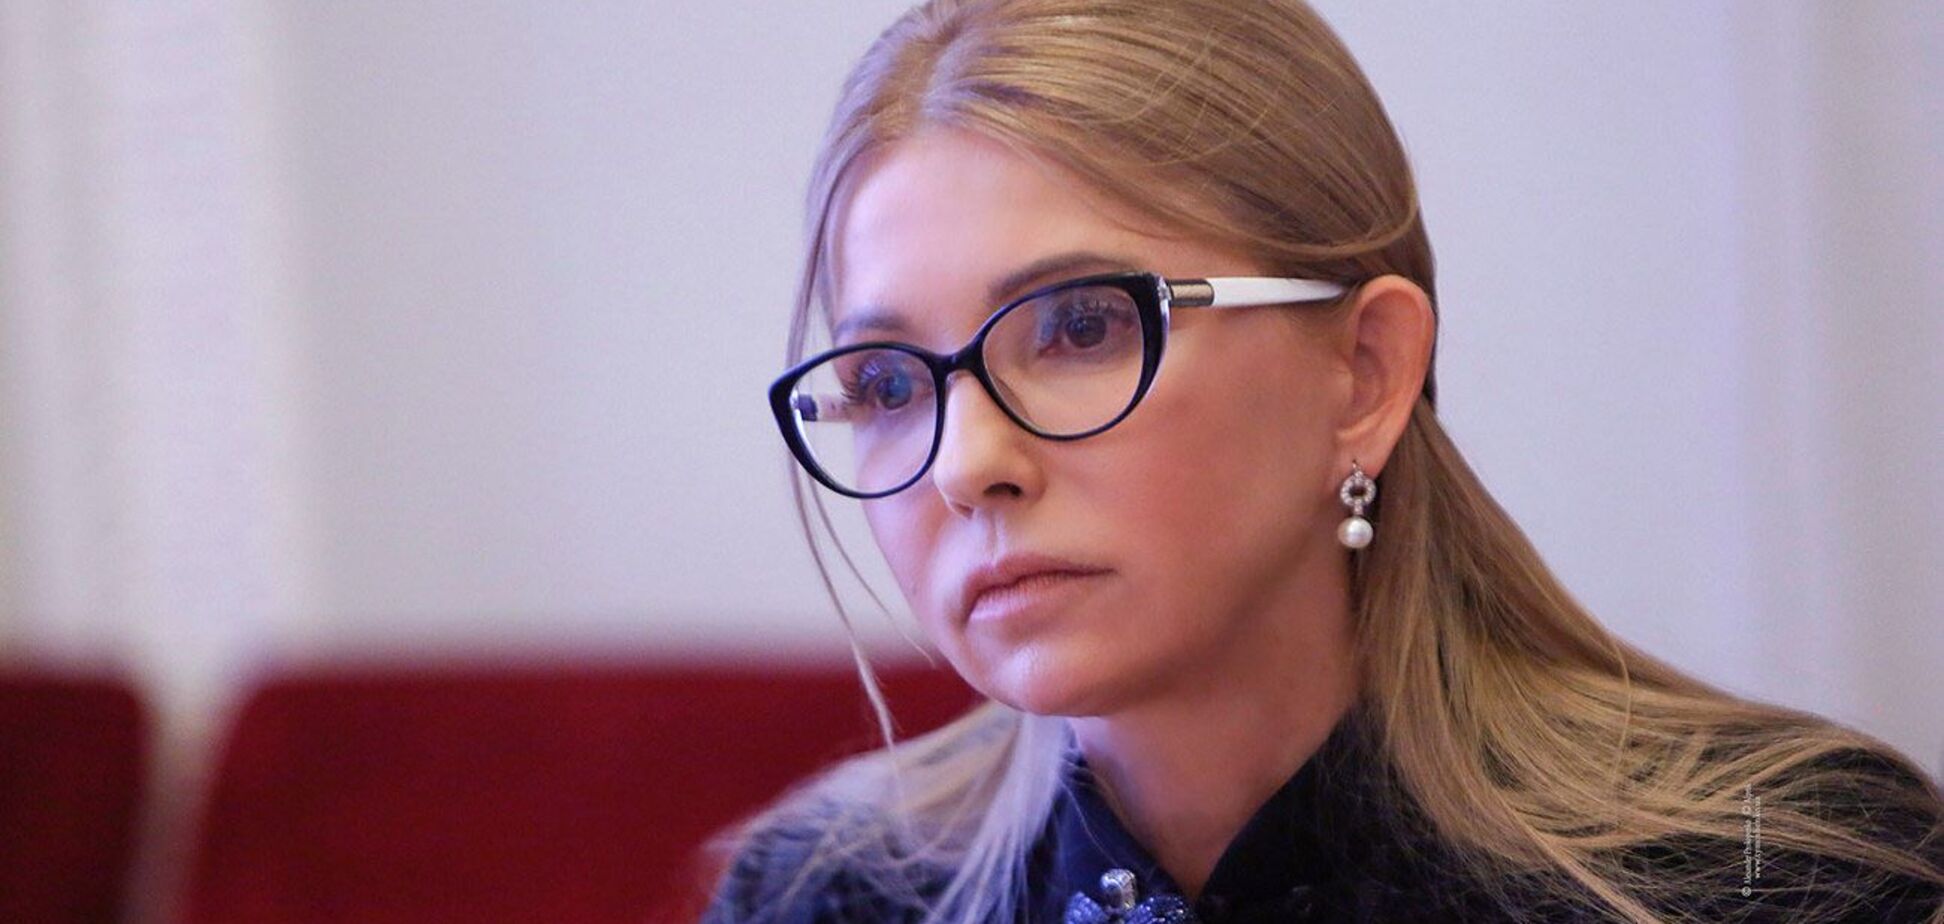 Імпорт струму з Росії і Білорусі став можливий через корупцію і непрофесіоналізм влади,– Тимошенко